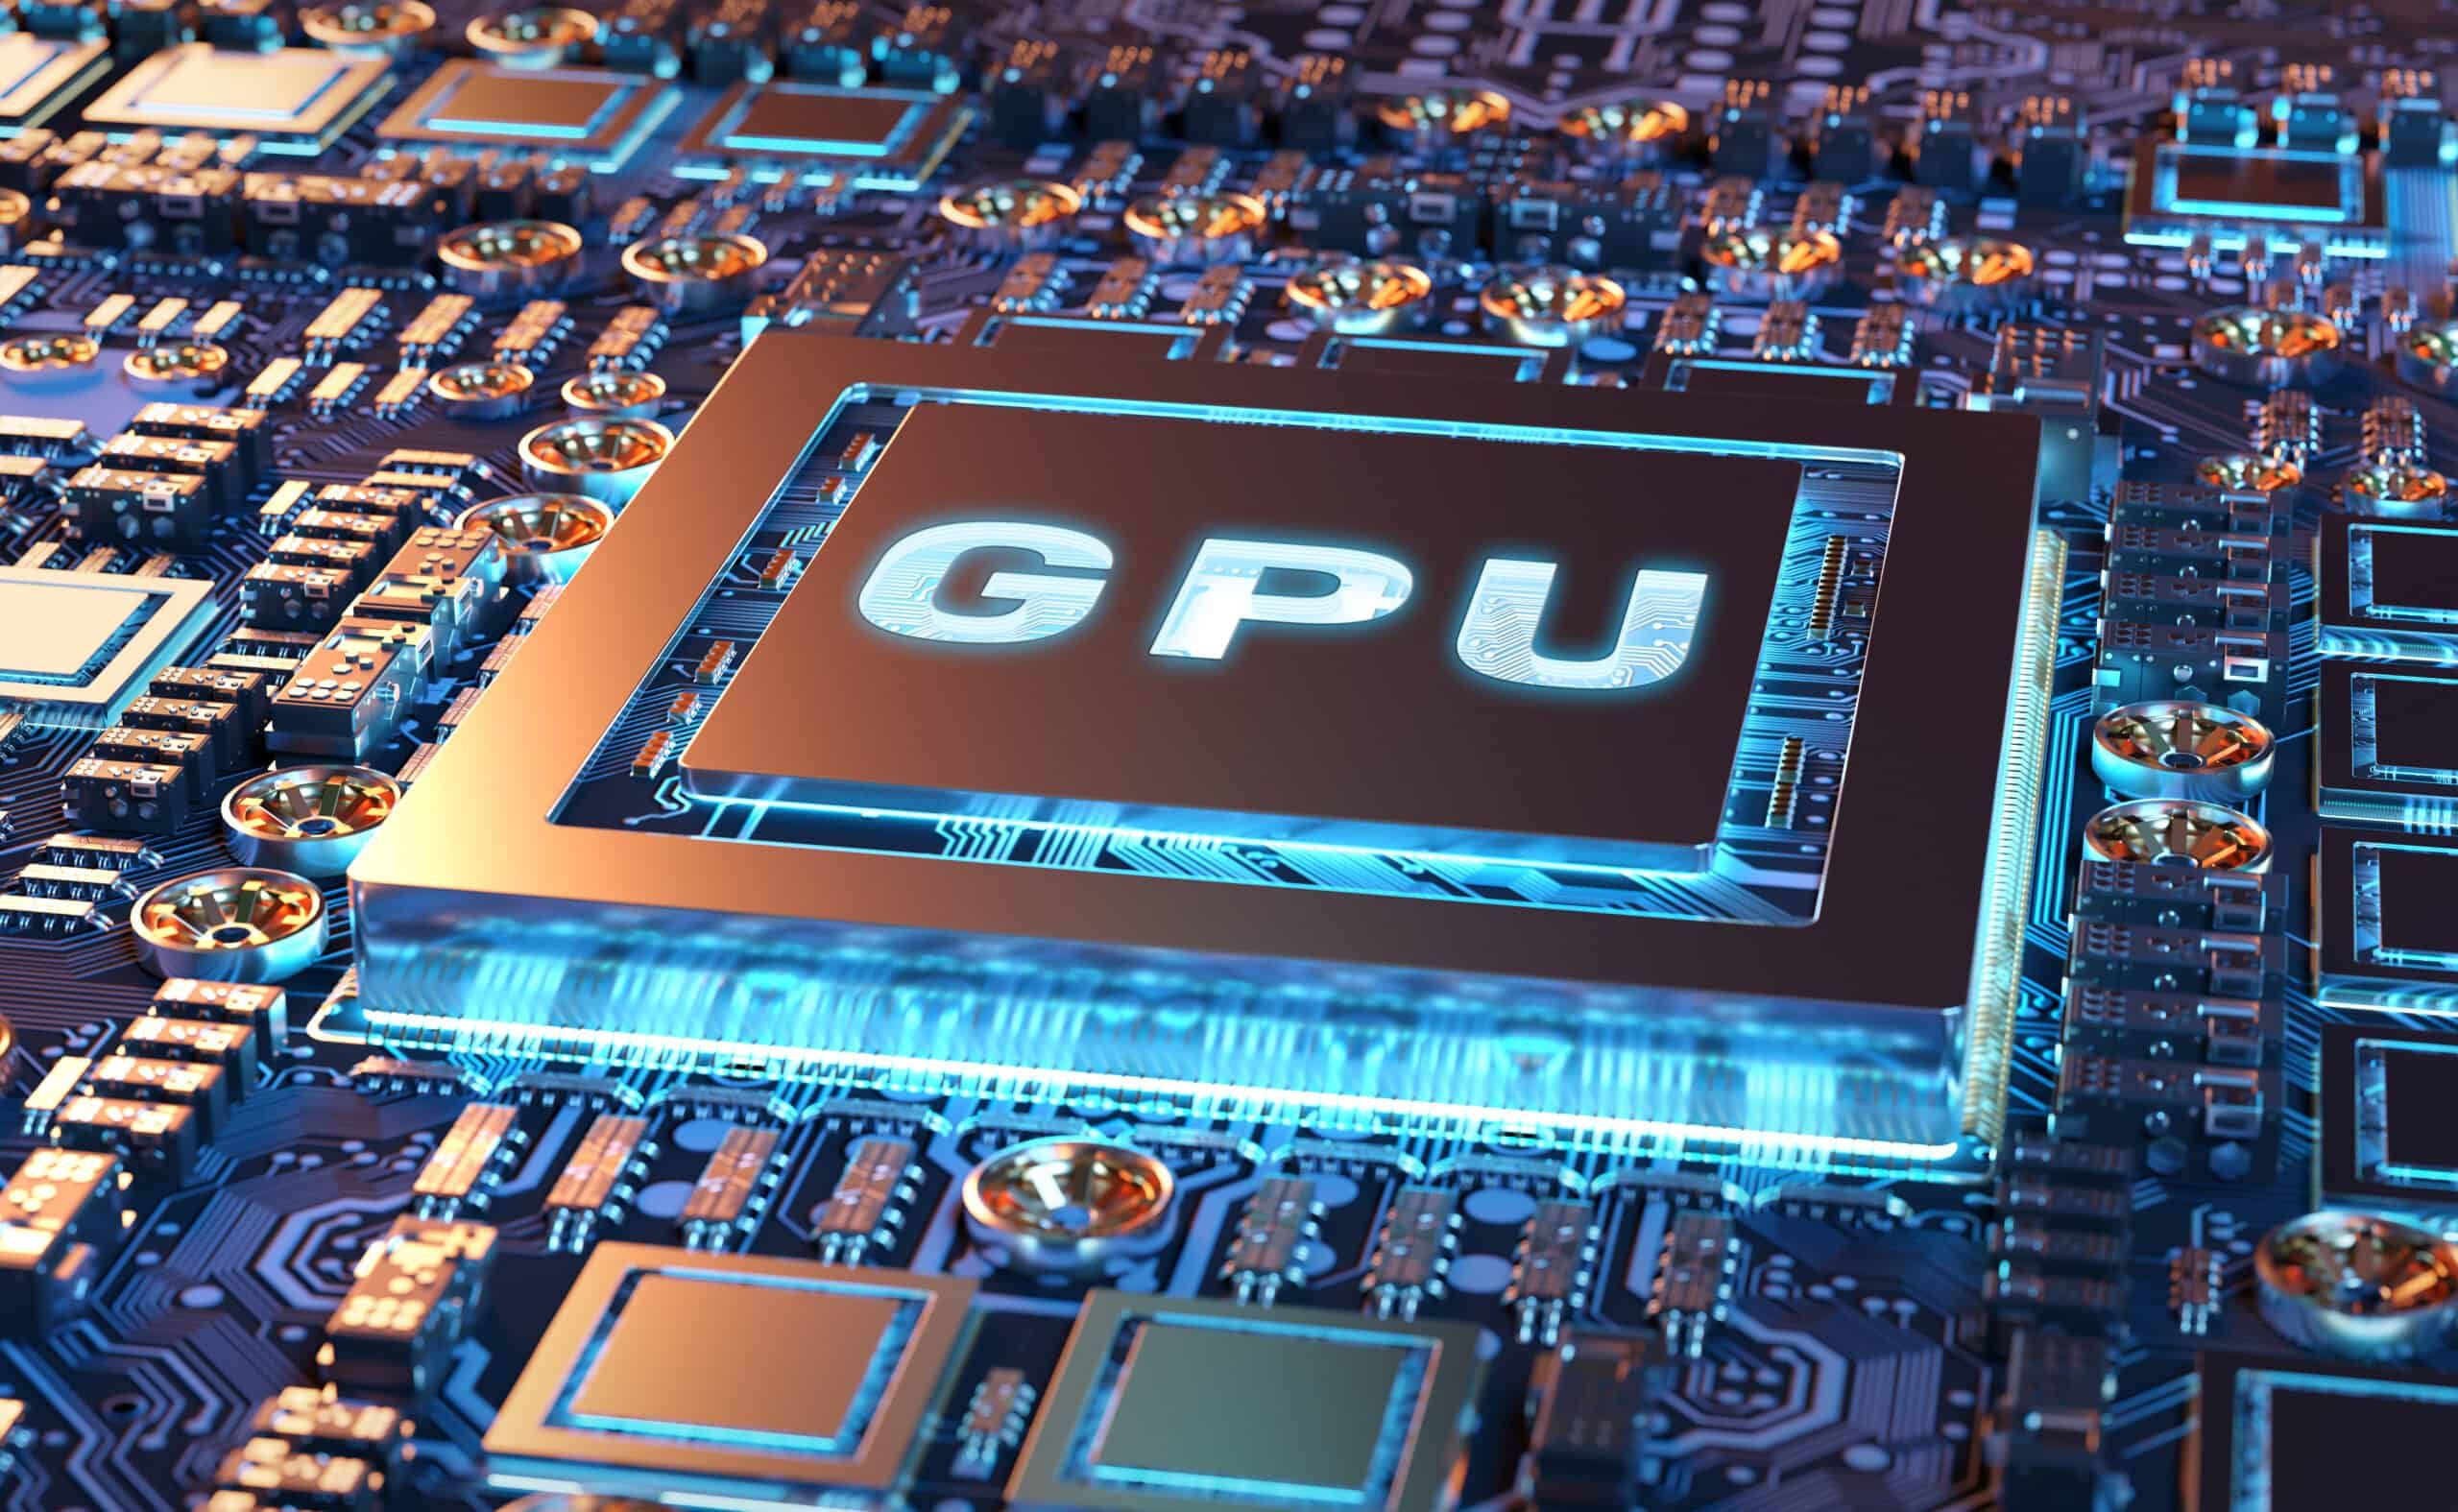 Gráfico de GPU em uma placa de circuito